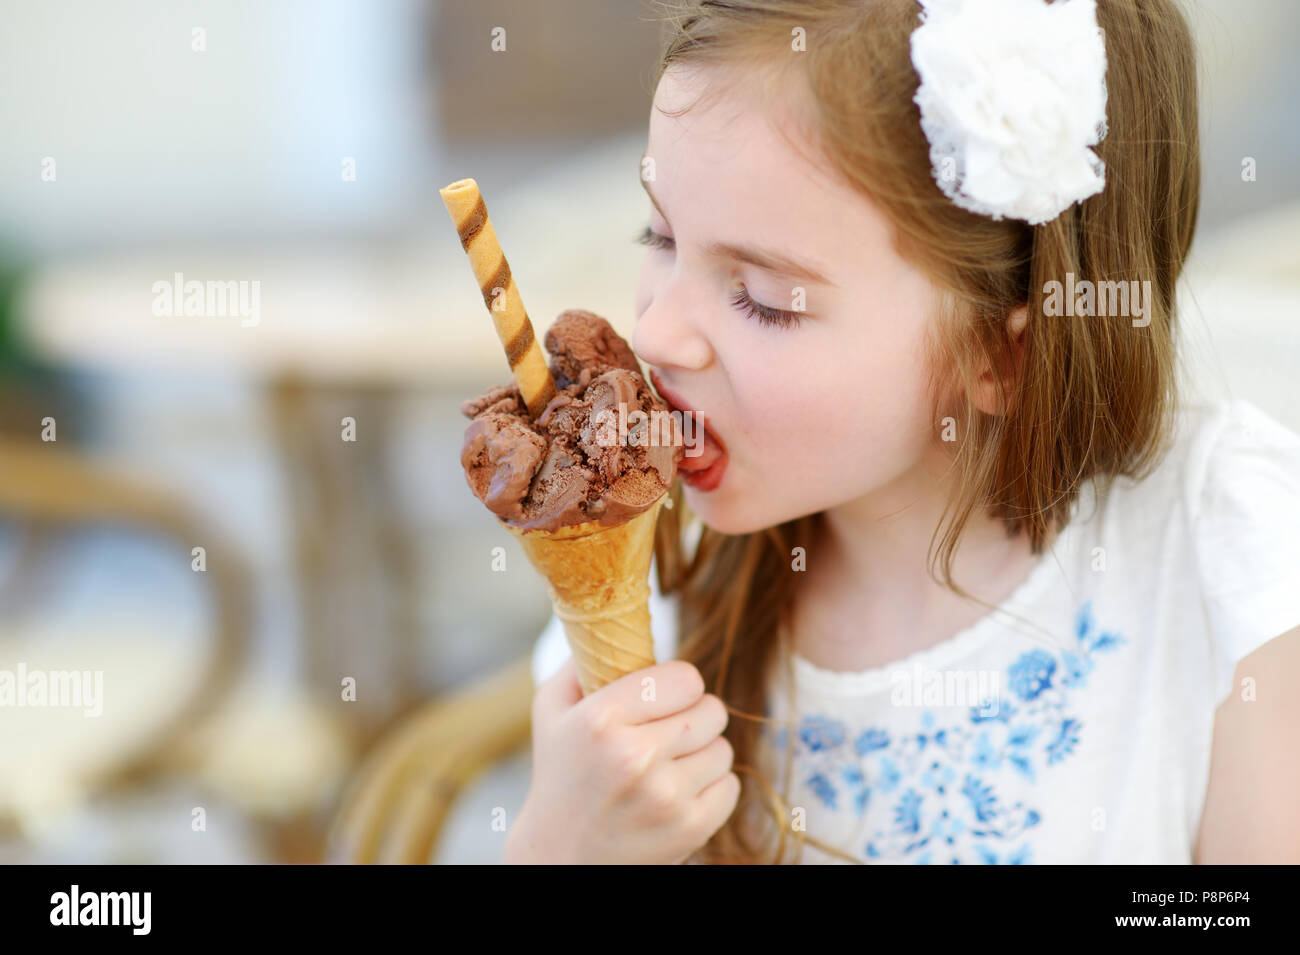 Полизать маленькой девочке. Маленькая девочка и мороженое. Маленькая девочка ест мороженое. Маленькая девочка облизывает мороженое. Ребенок облизывает мороженое.